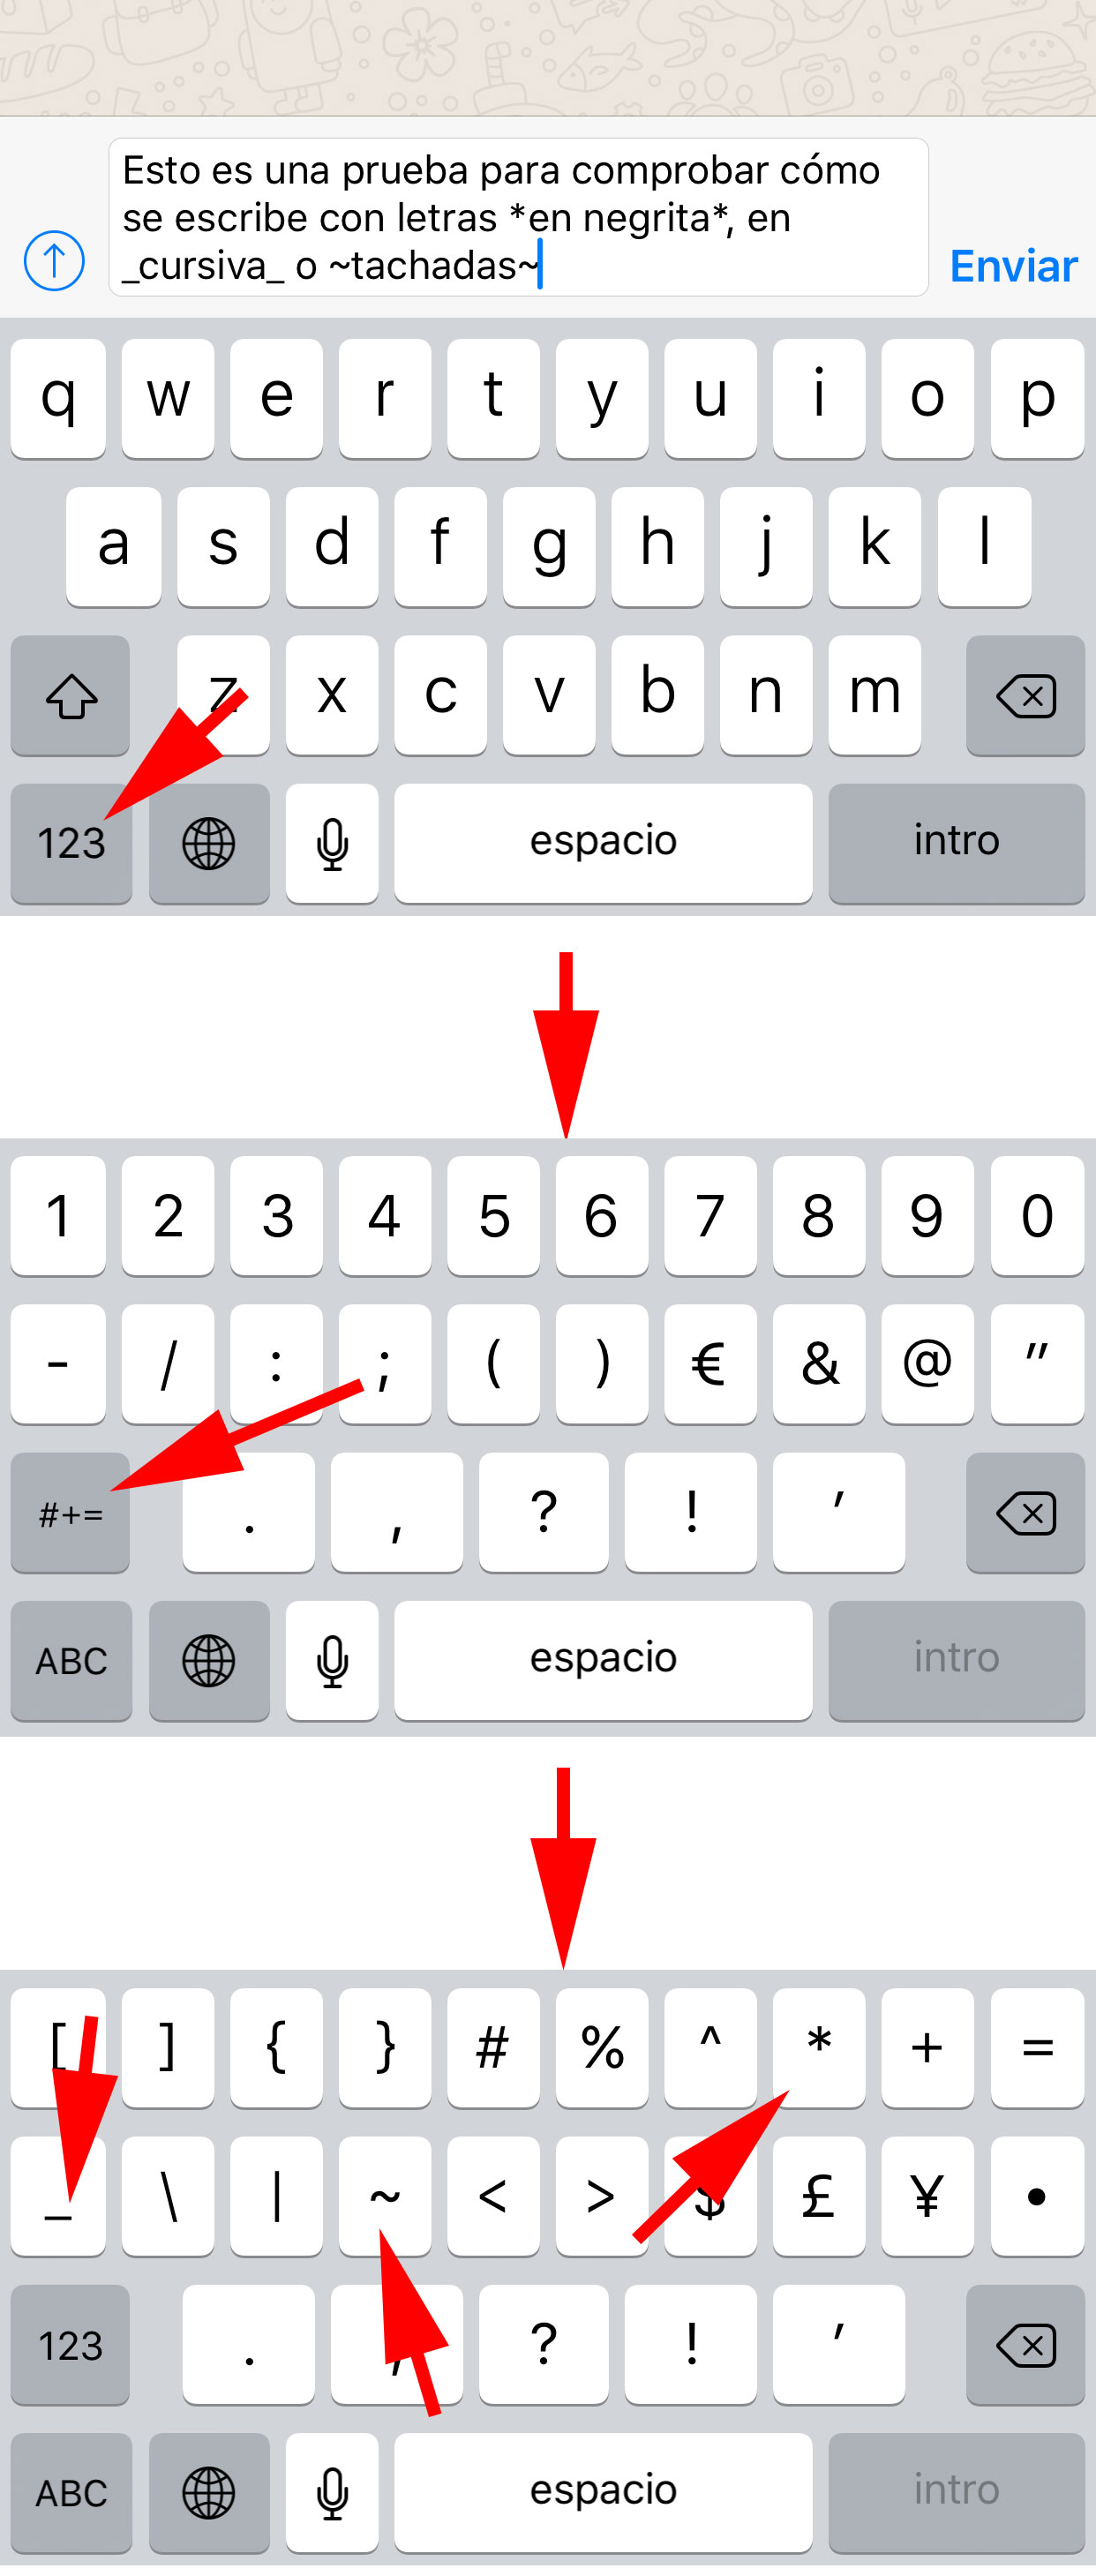 Cómo escribir con letras cursivas o negritas en Whatsapp | iPhoneros